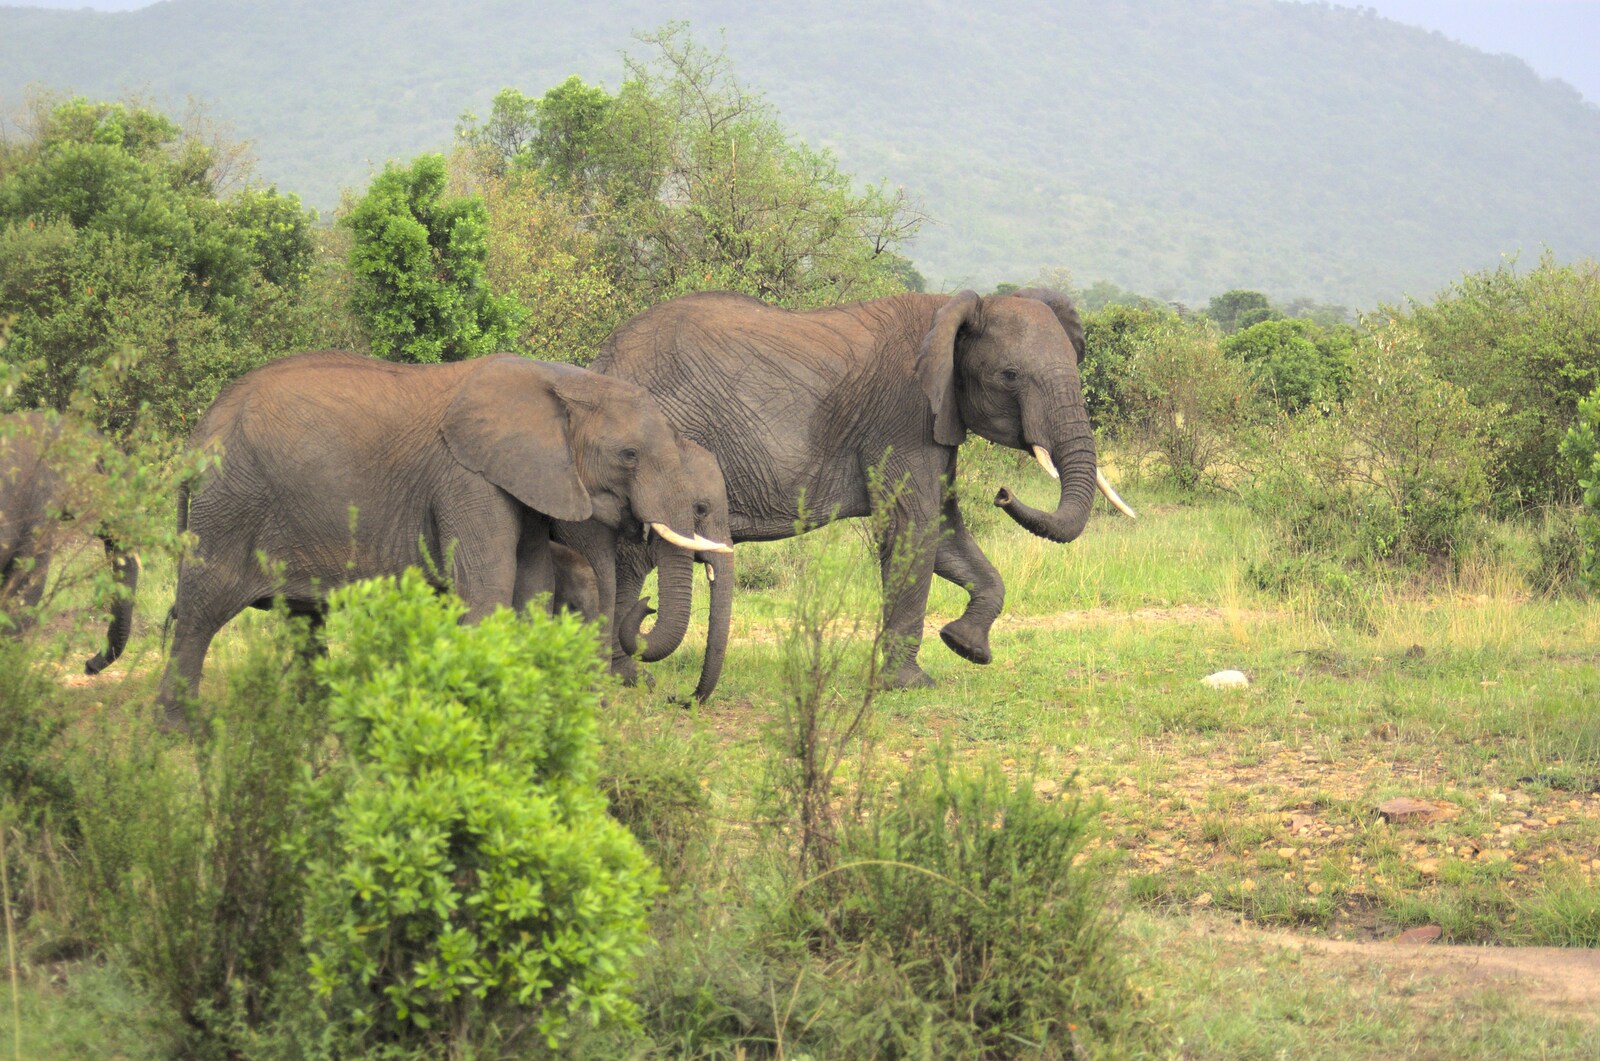 Elephants with a baby in tow from Maasai Mara Safari and a Maasai Village, Ololaimutia, Kenya - 5th November 2010